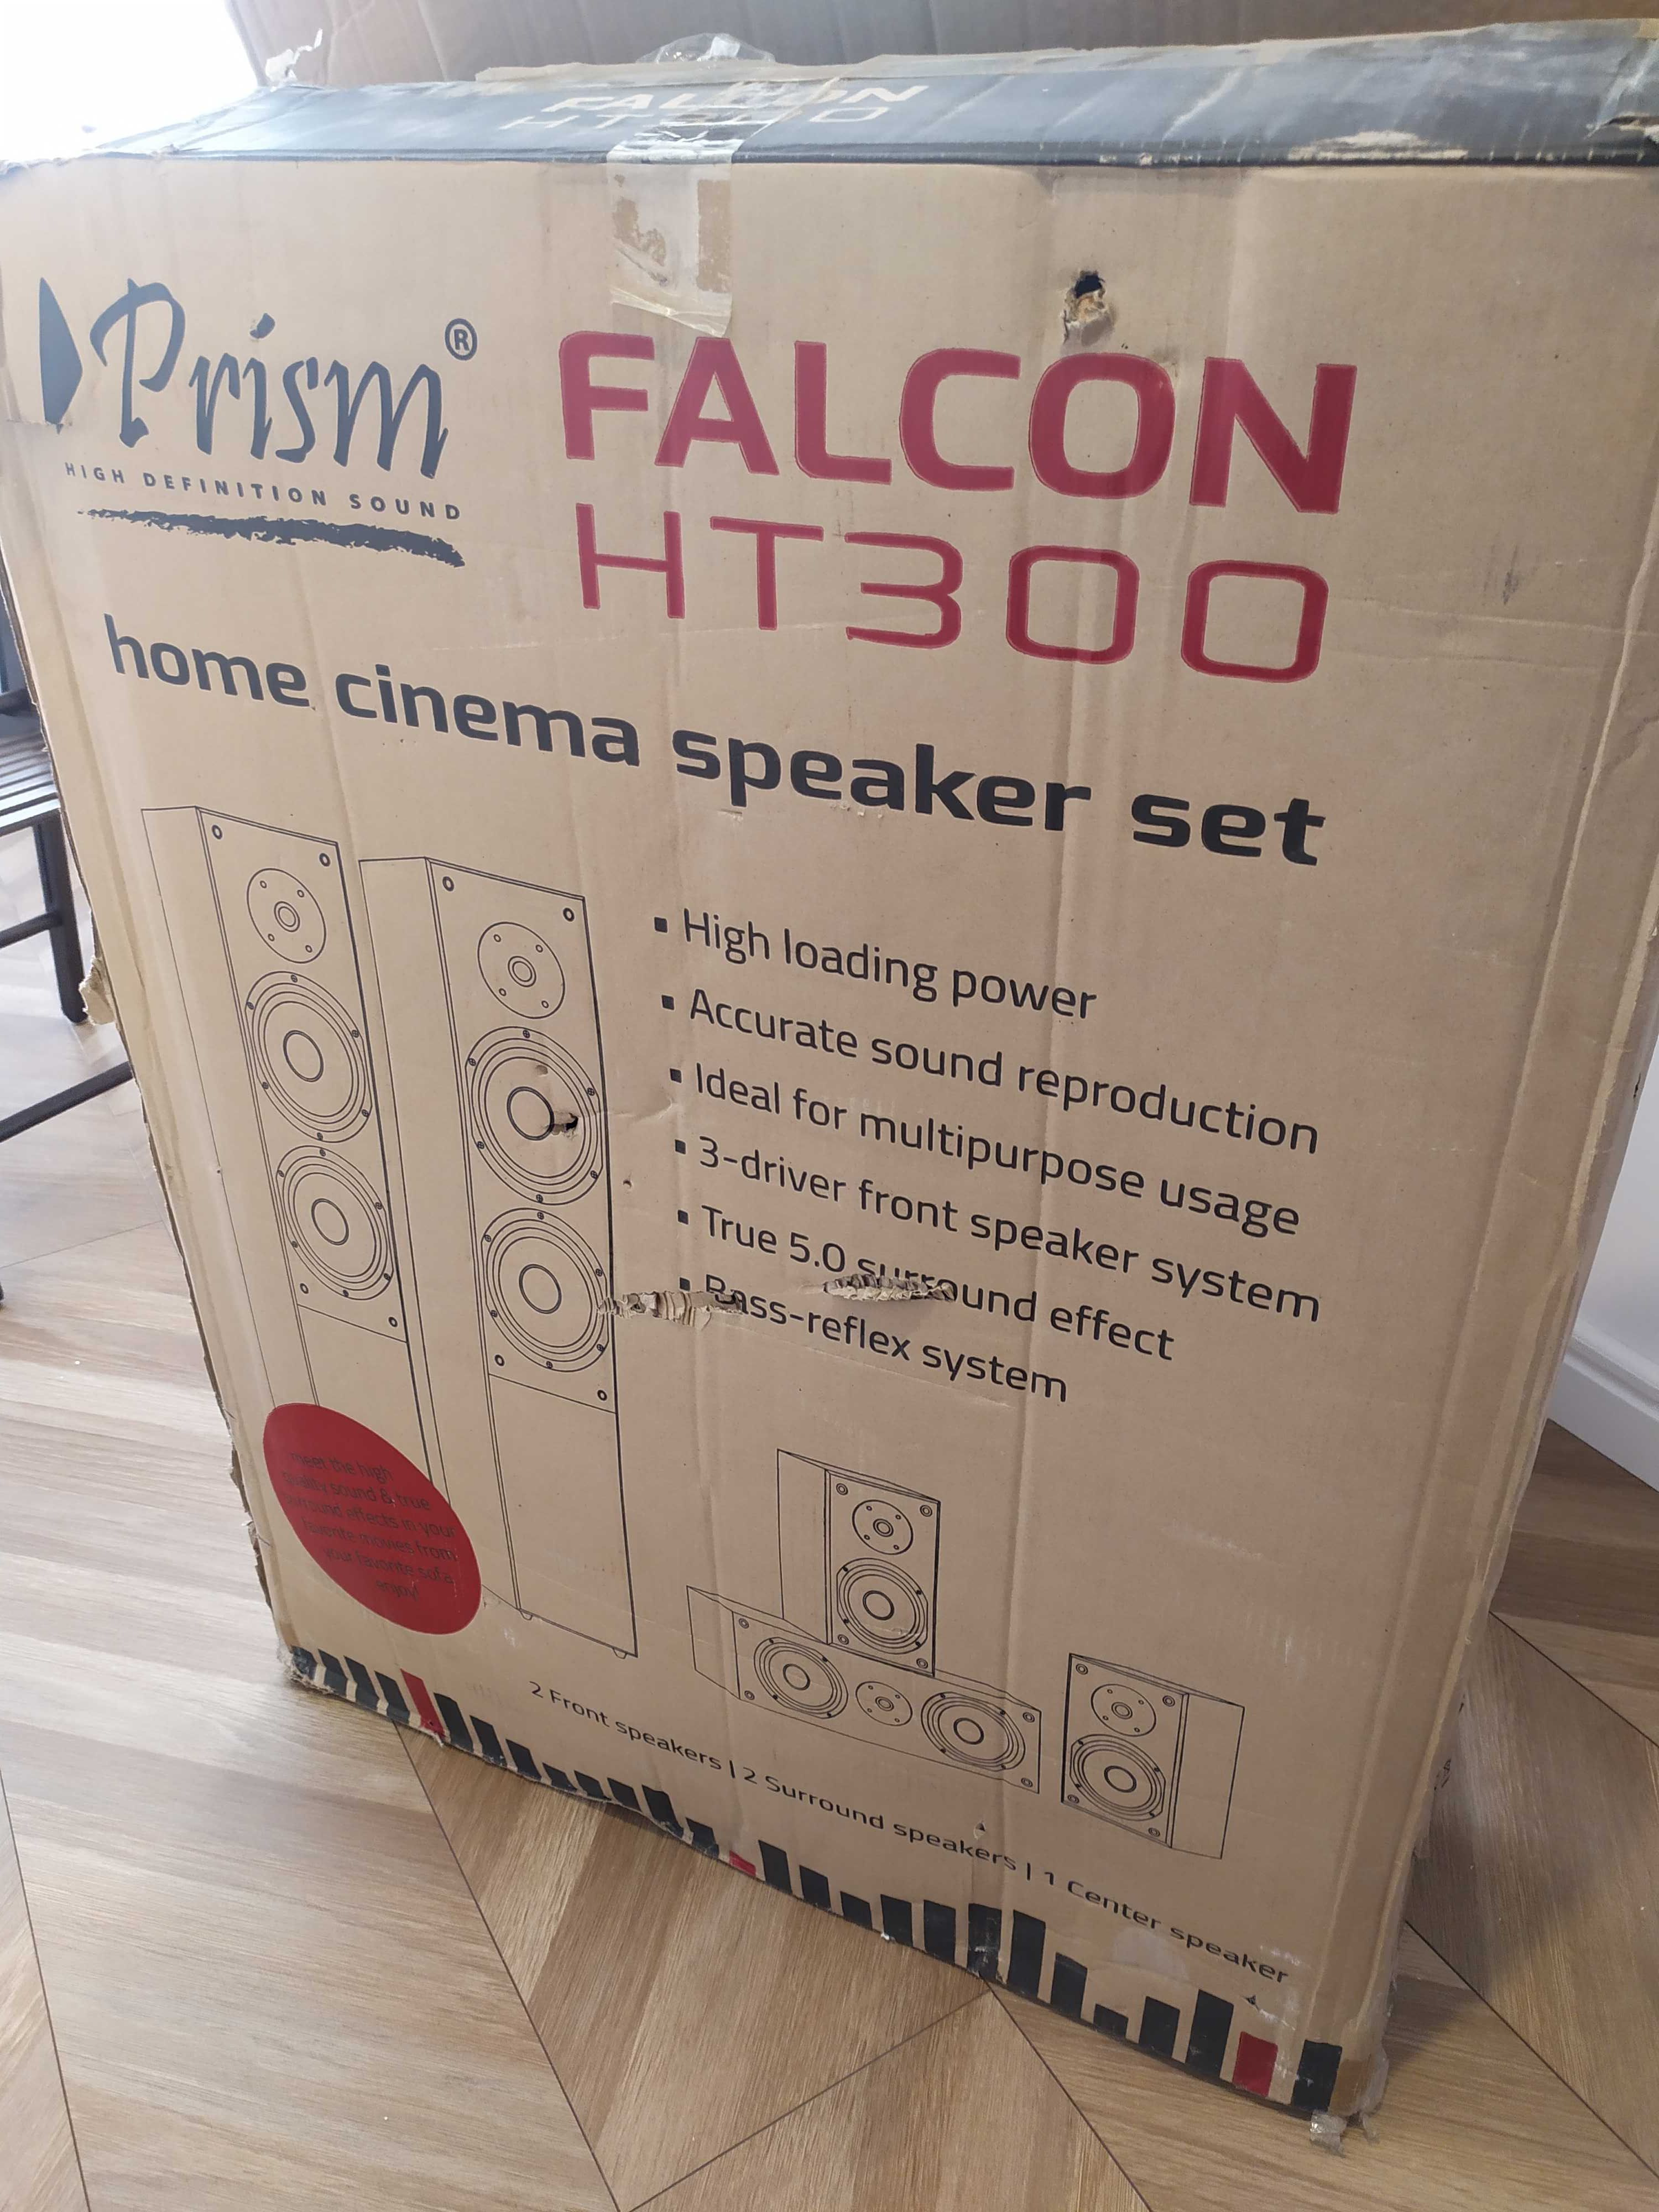 Głośniki Prism Falcon HT300